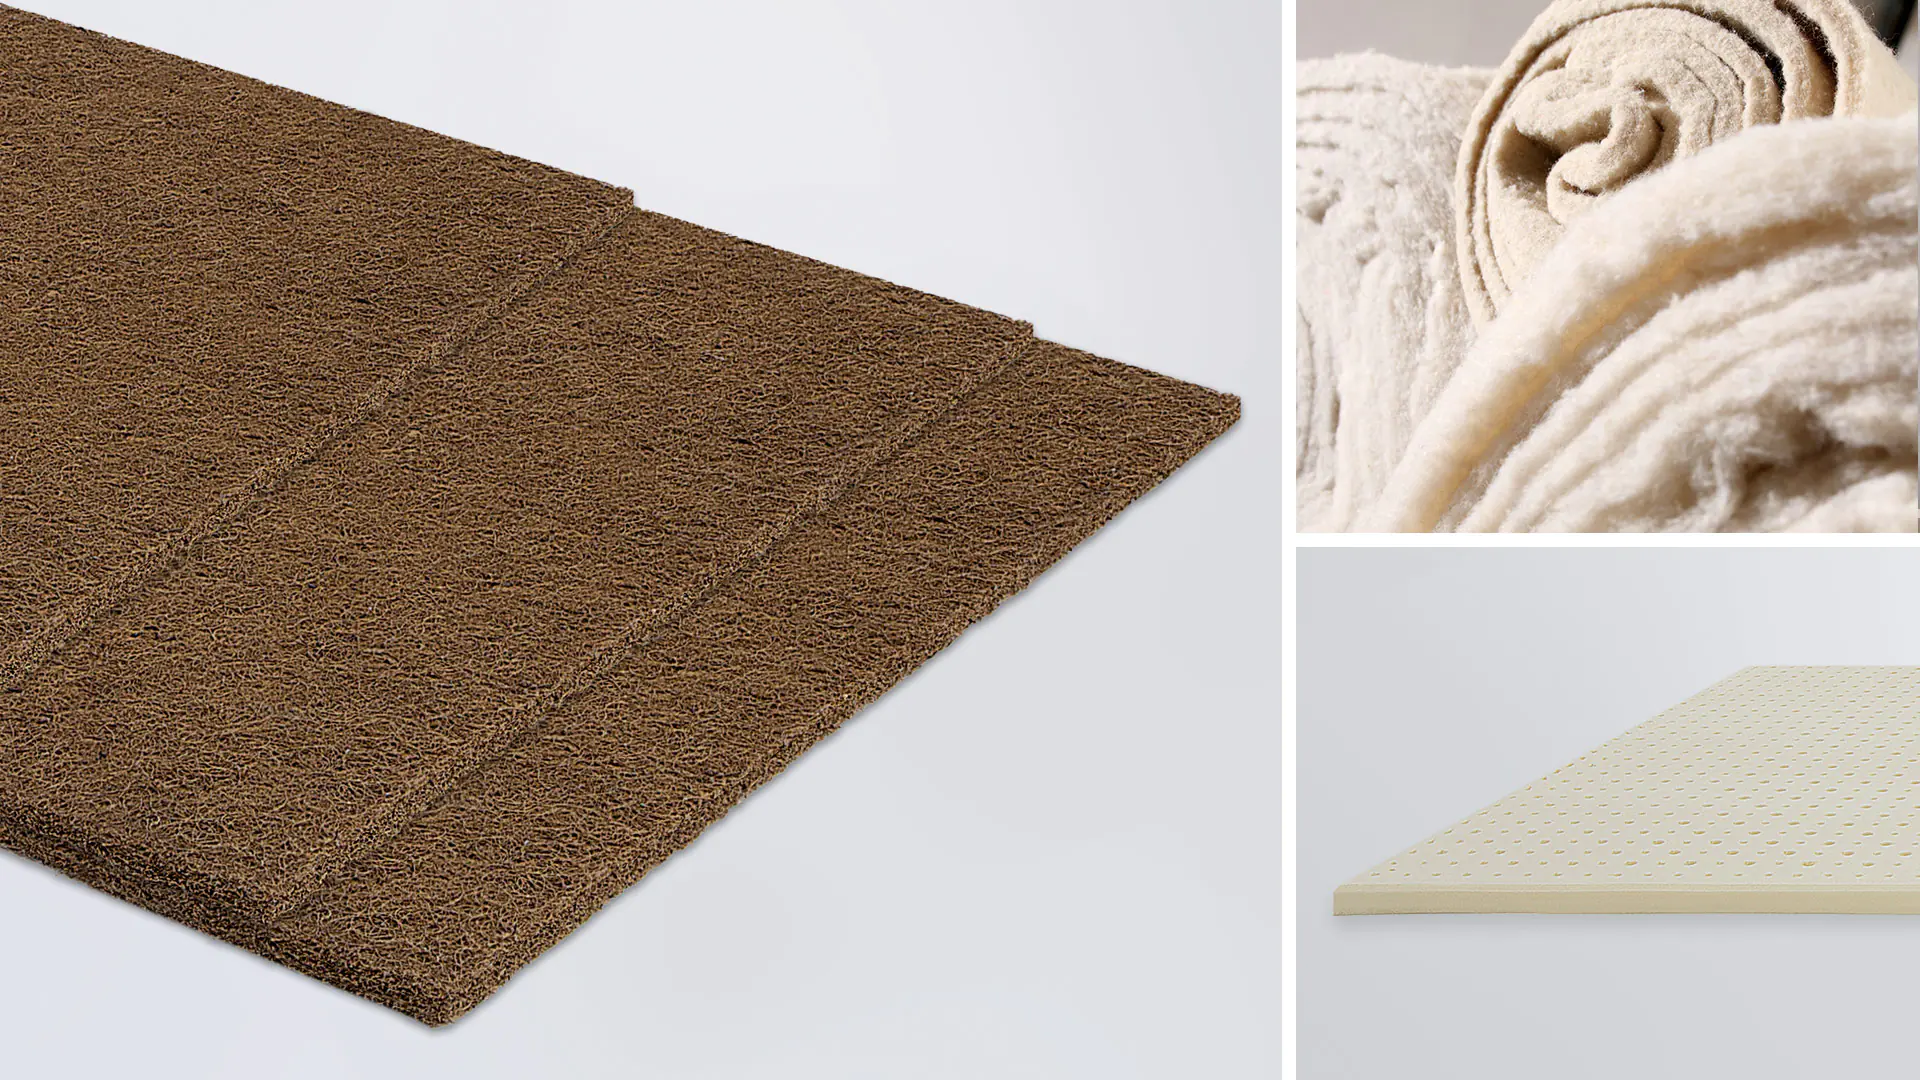 A gauche, tapis de coco, en haut à droite, couverture en coton, en dessous, plaques de latex naturel.